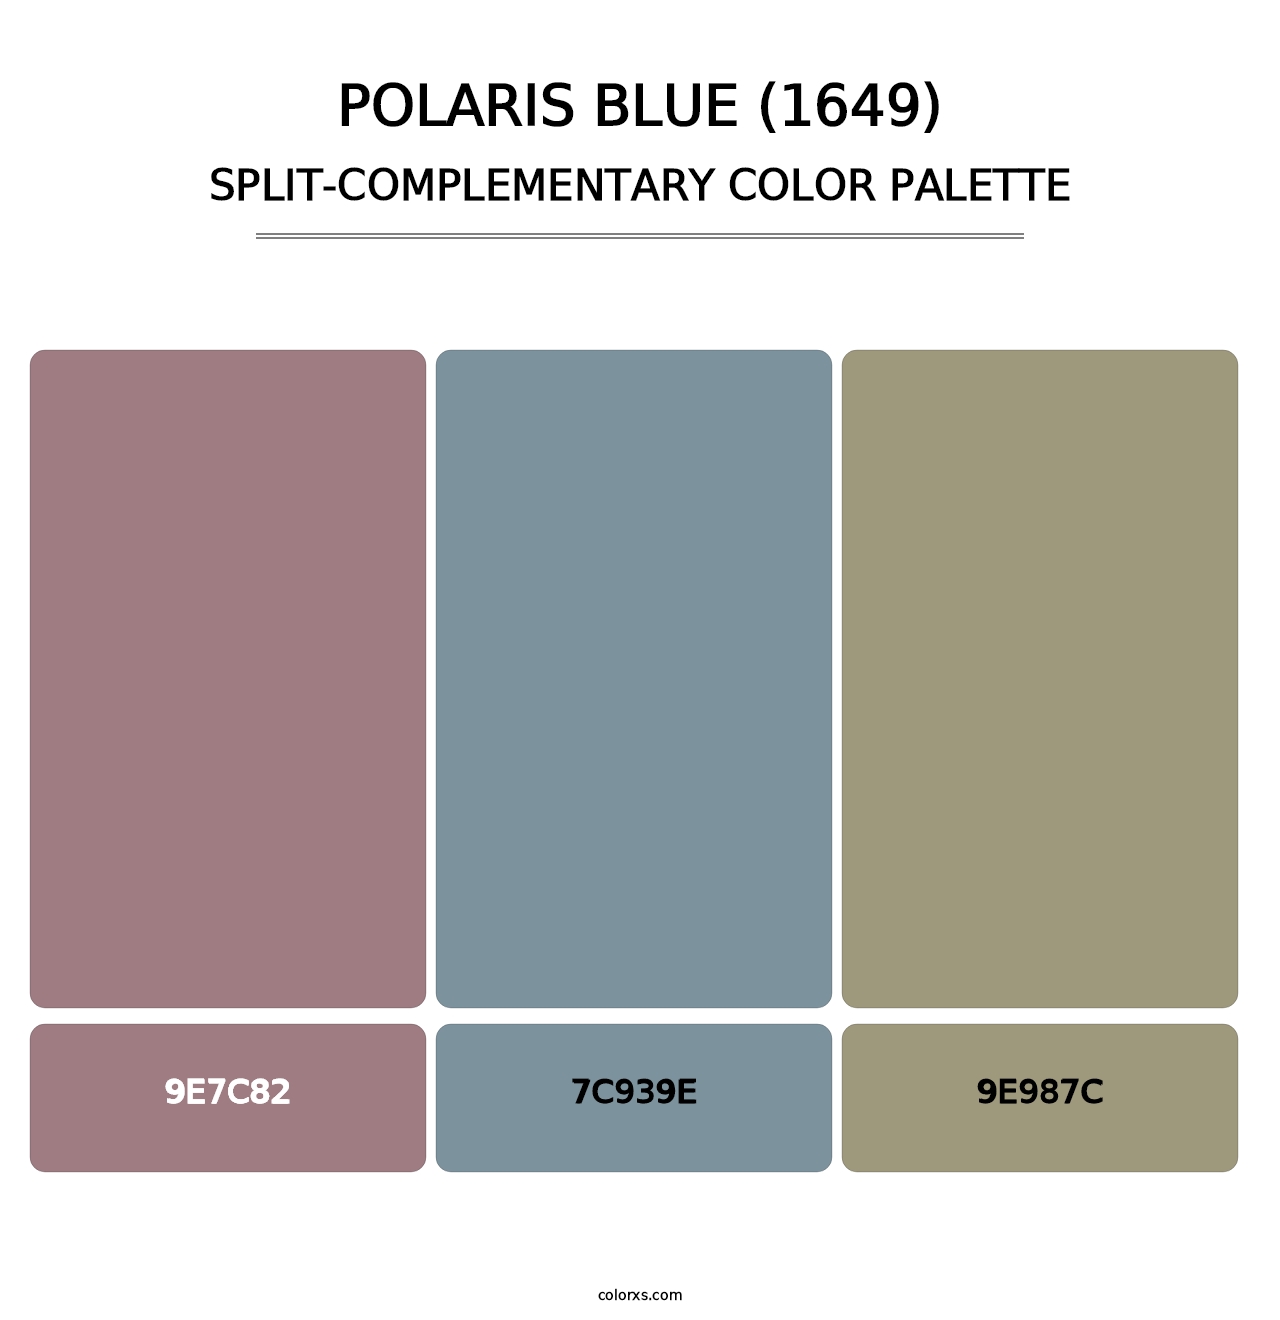 Polaris Blue (1649) - Split-Complementary Color Palette